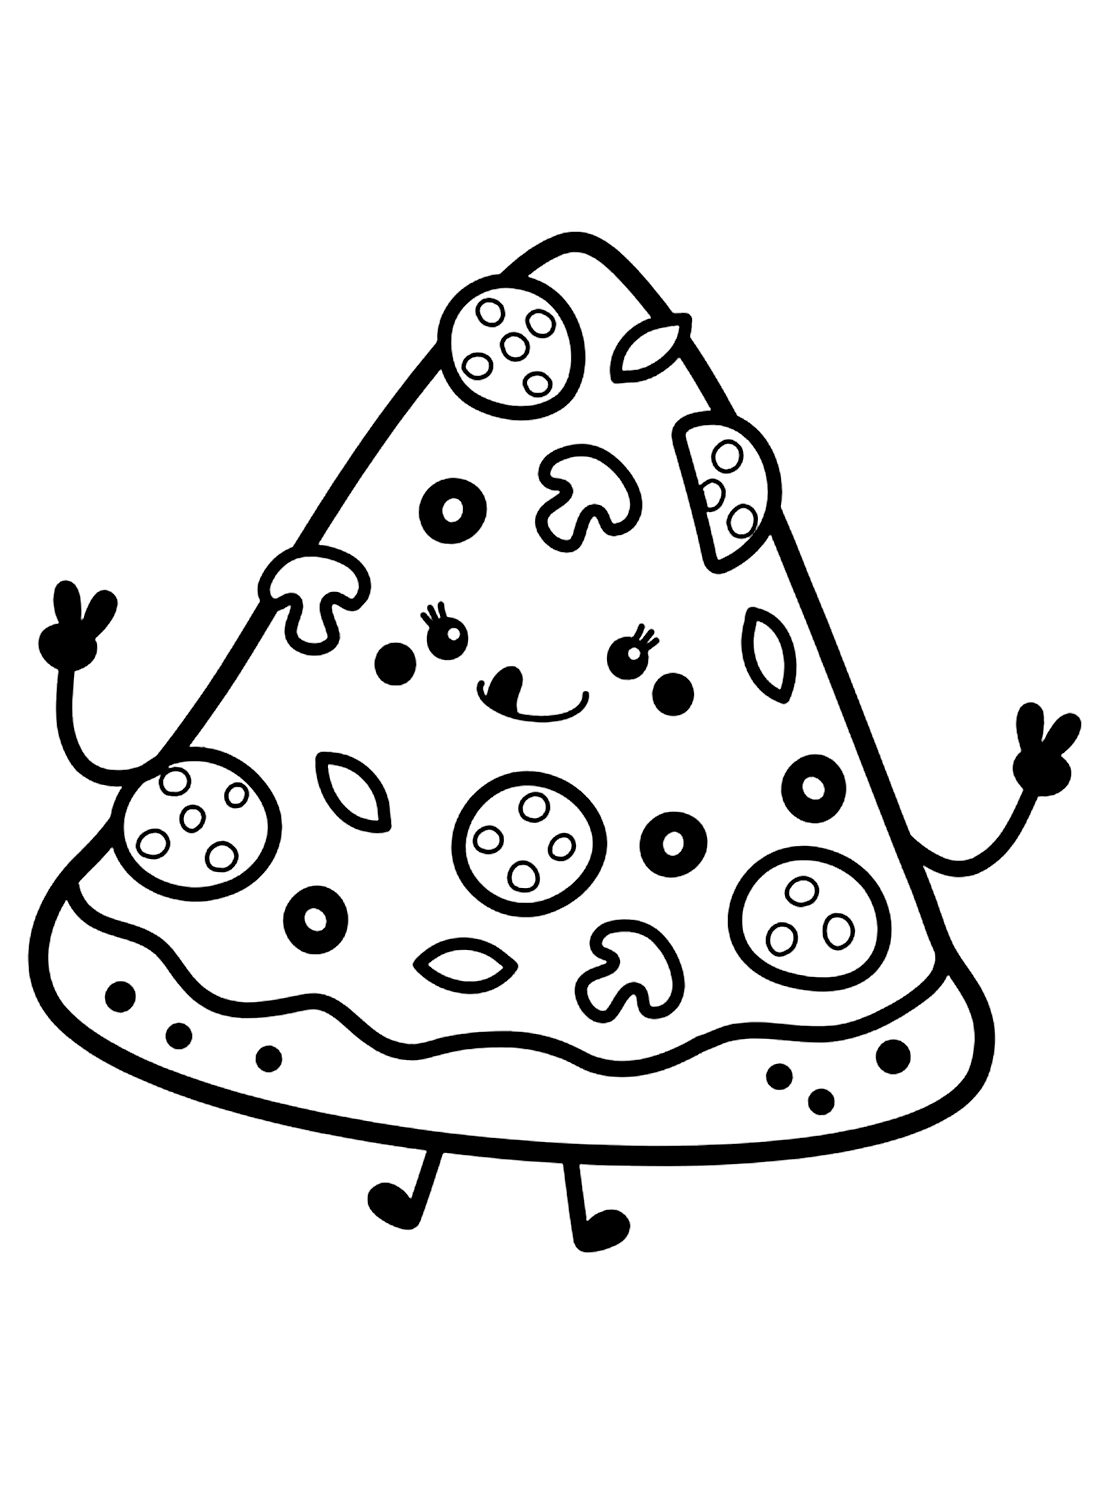 Divertente pagina da colorare di pizza